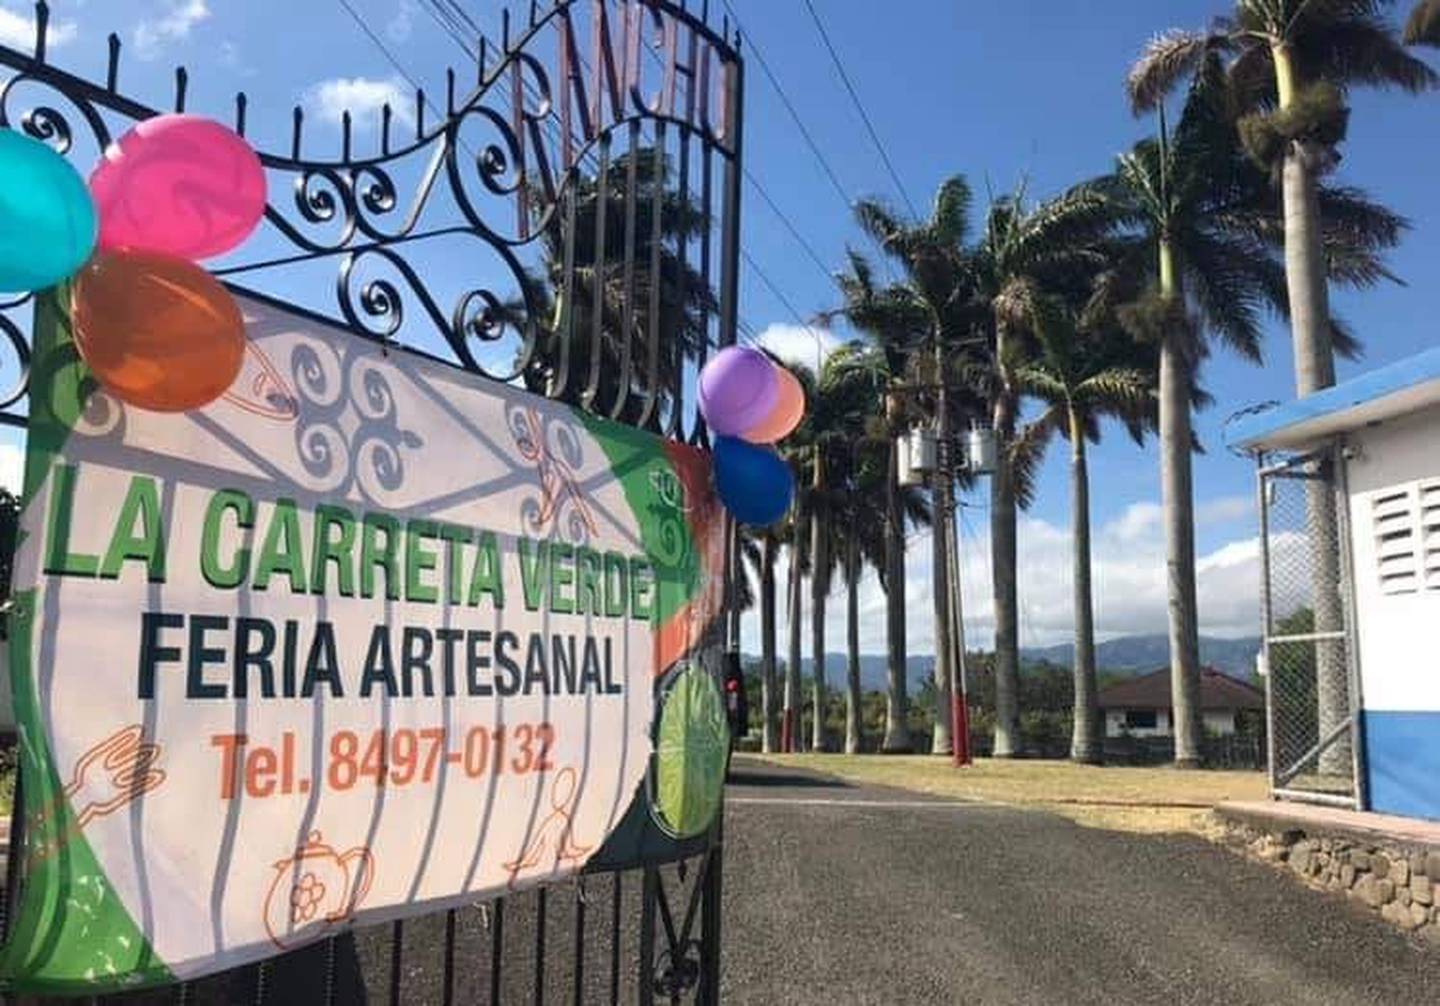 La Feria Artesanal La Carreta Verde le espera este próximo 19 de noviembre de  9:30 a.m., a 3:00 p.m., en la Finca Rancho Arizona. (Cortesía)